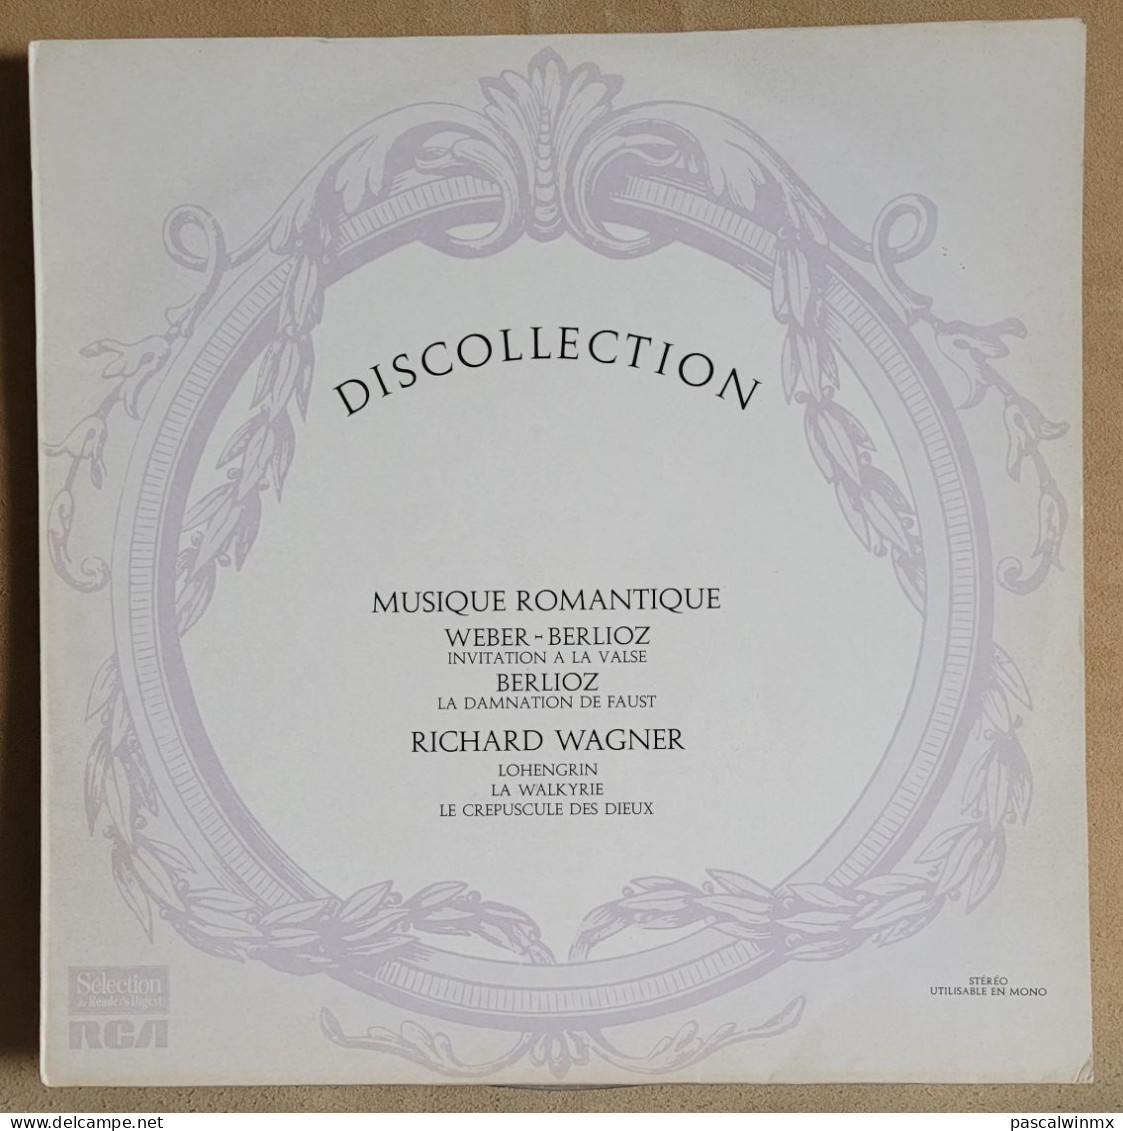 Série Complète de 12 VINYLS - DISCOLLECTION - Musique Classique